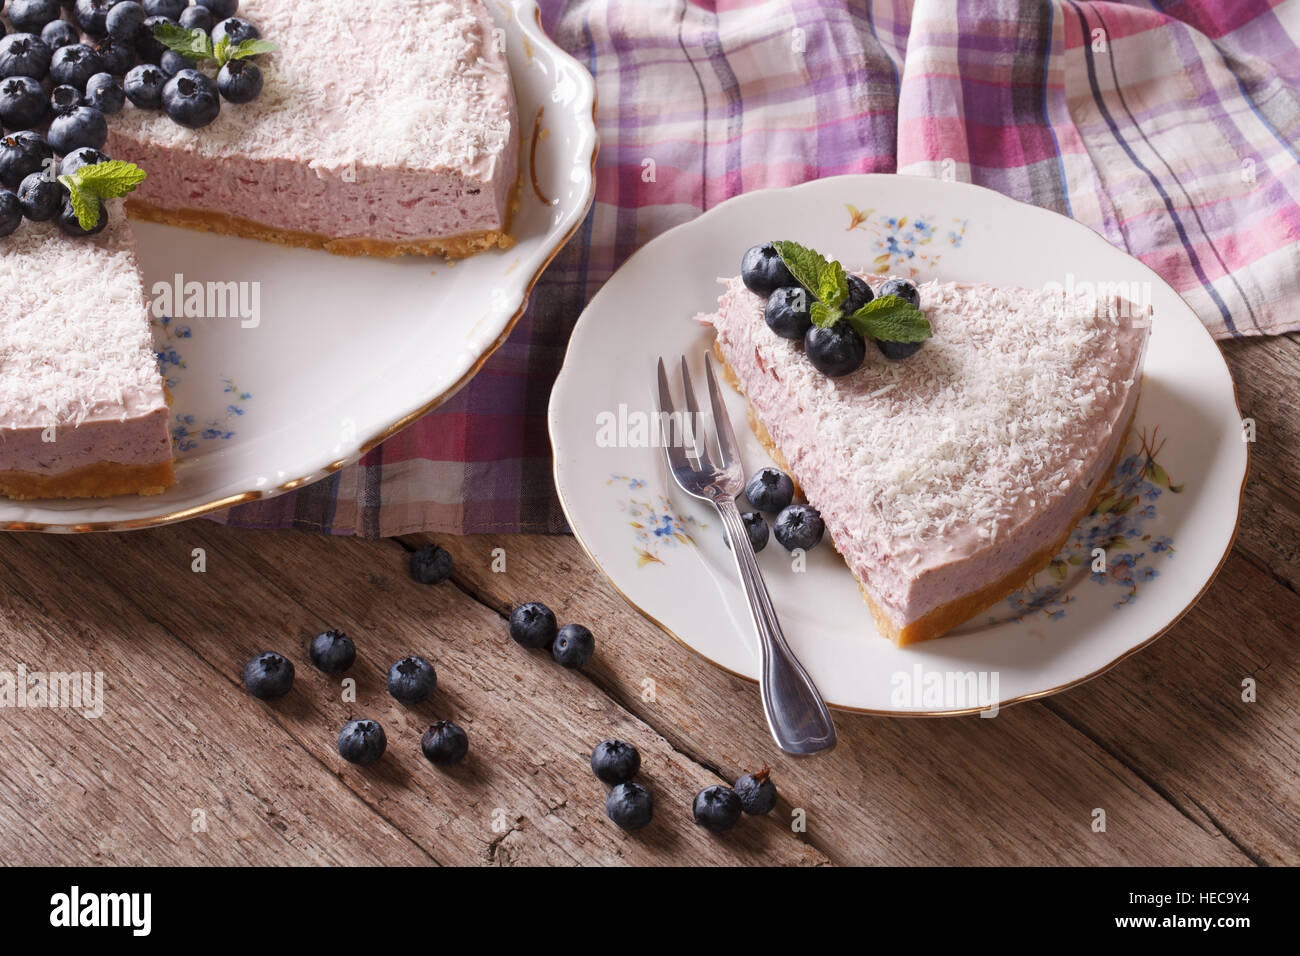 Tranches de gâteau aux bleuets avec les baies fraîches et de noix de coco sur la table horizontale. Banque D'Images